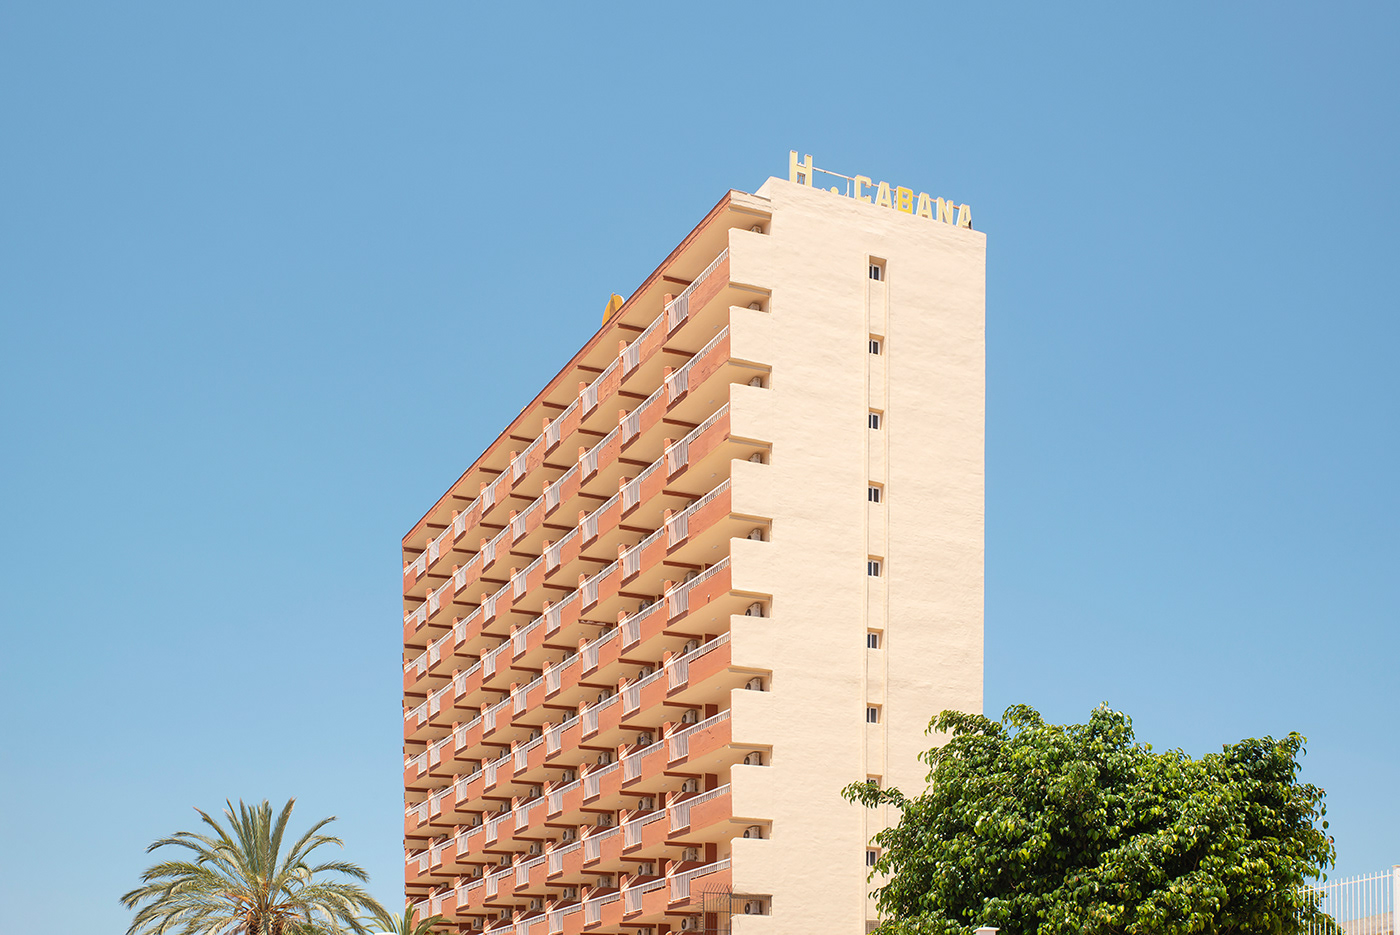 alicante architecture benidorm building color españa holidays hotel spain summer